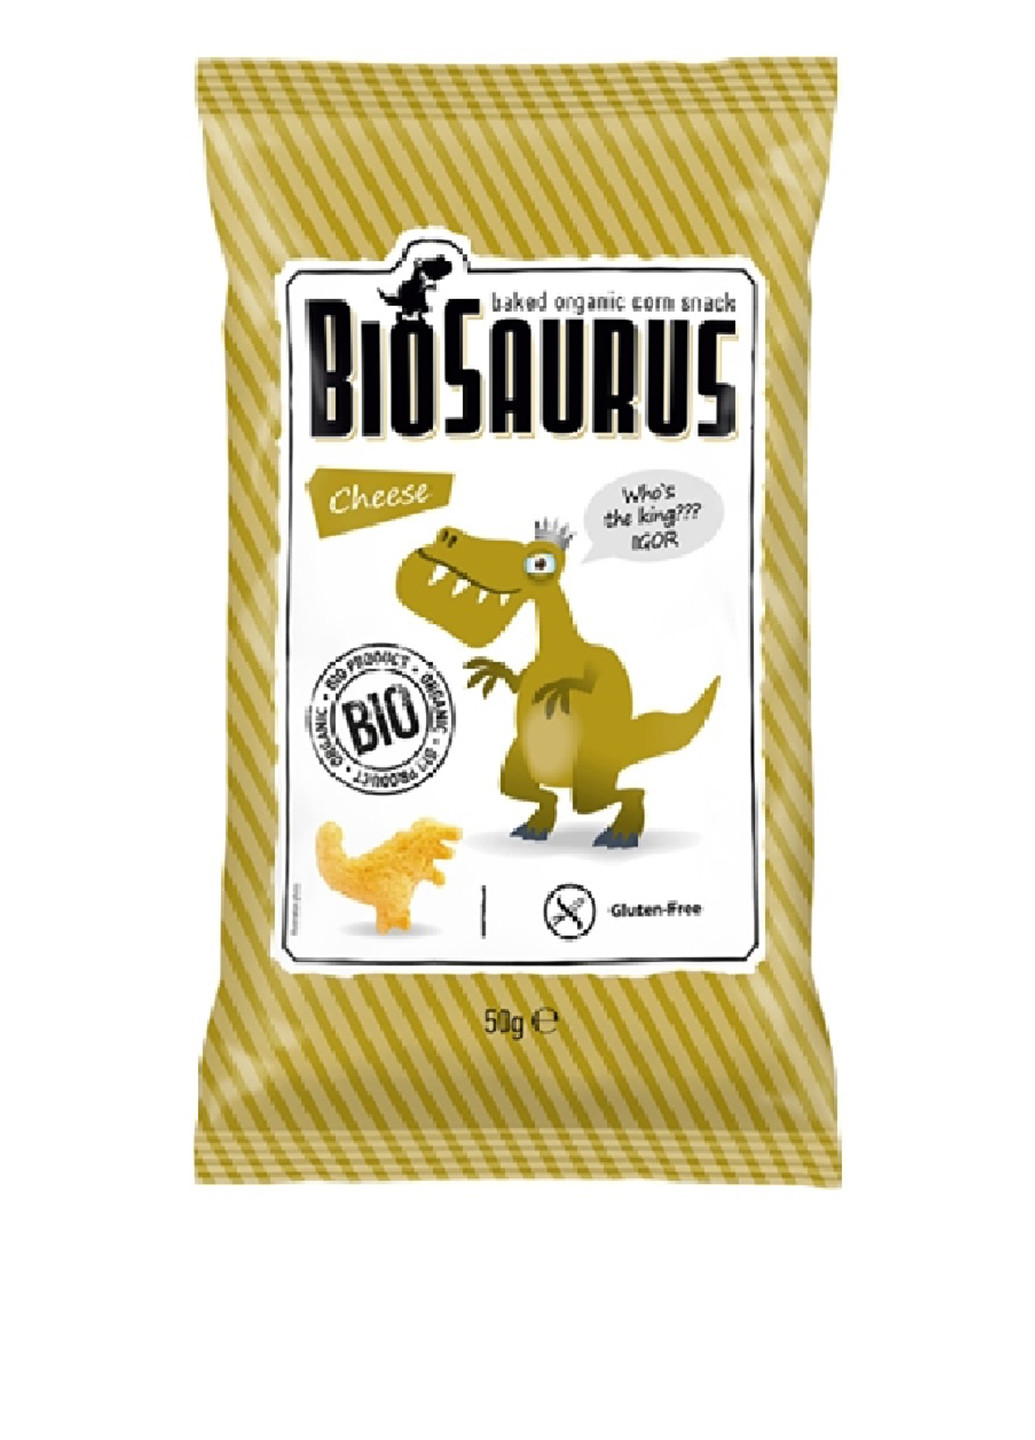 Снеки кукурузные в форме динозавов (с сыром) органические, 50 г Biosaurus